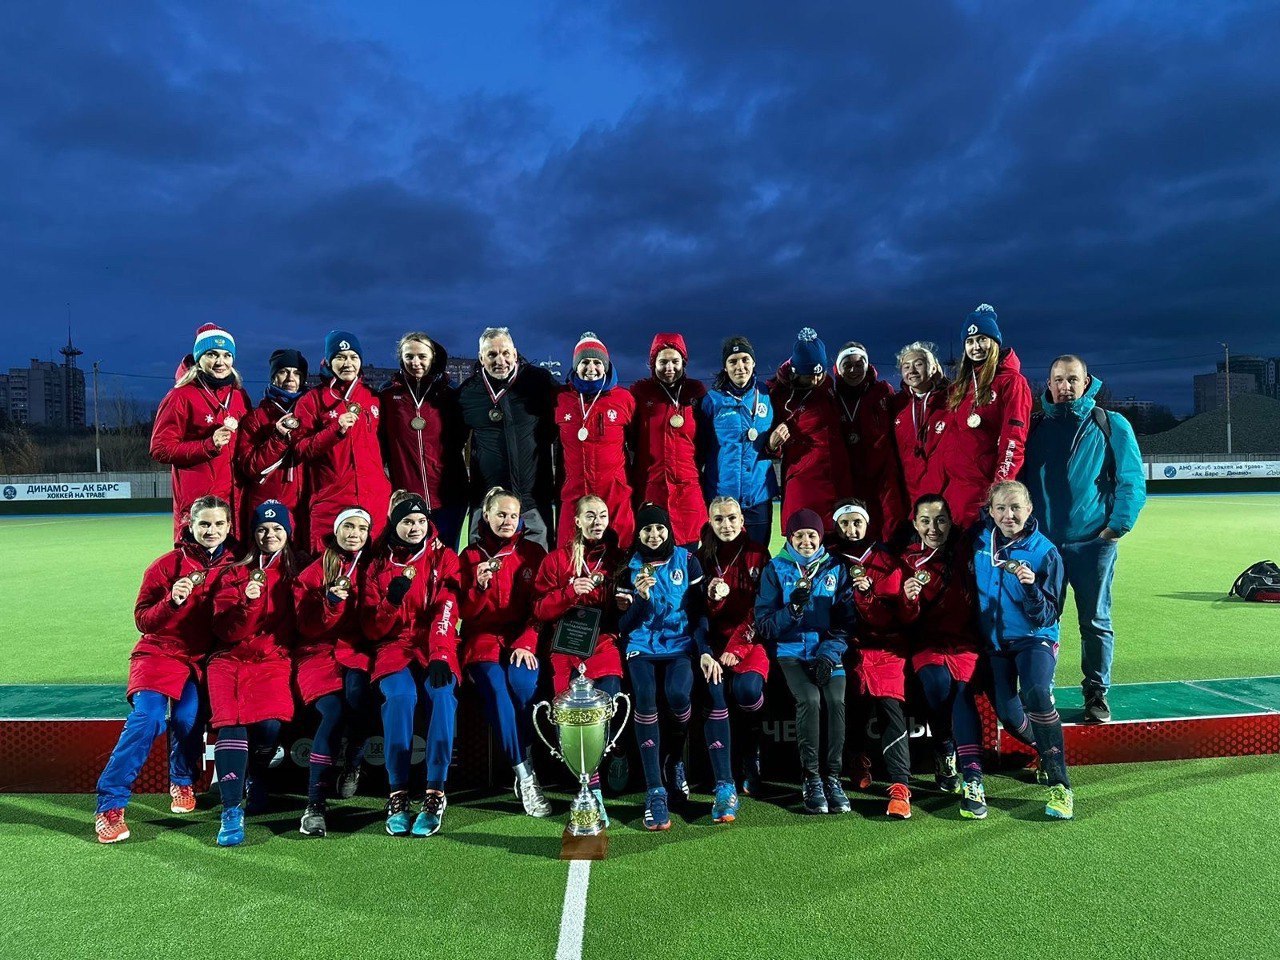 Клуб «Динамо-Электросталь» выиграл чемпионат России по хоккею на траве среди женских команд